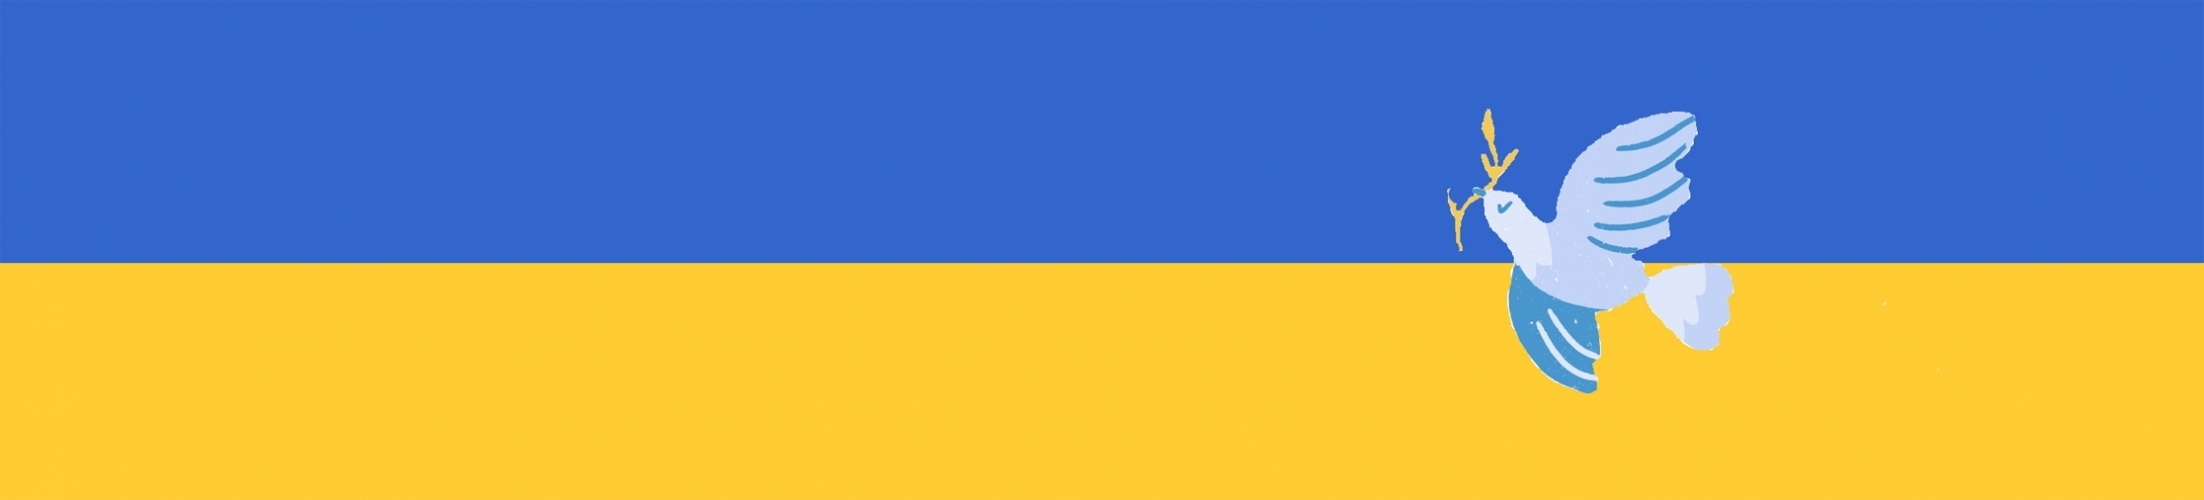 ZONTA hilft in der Ukraine / Überblick